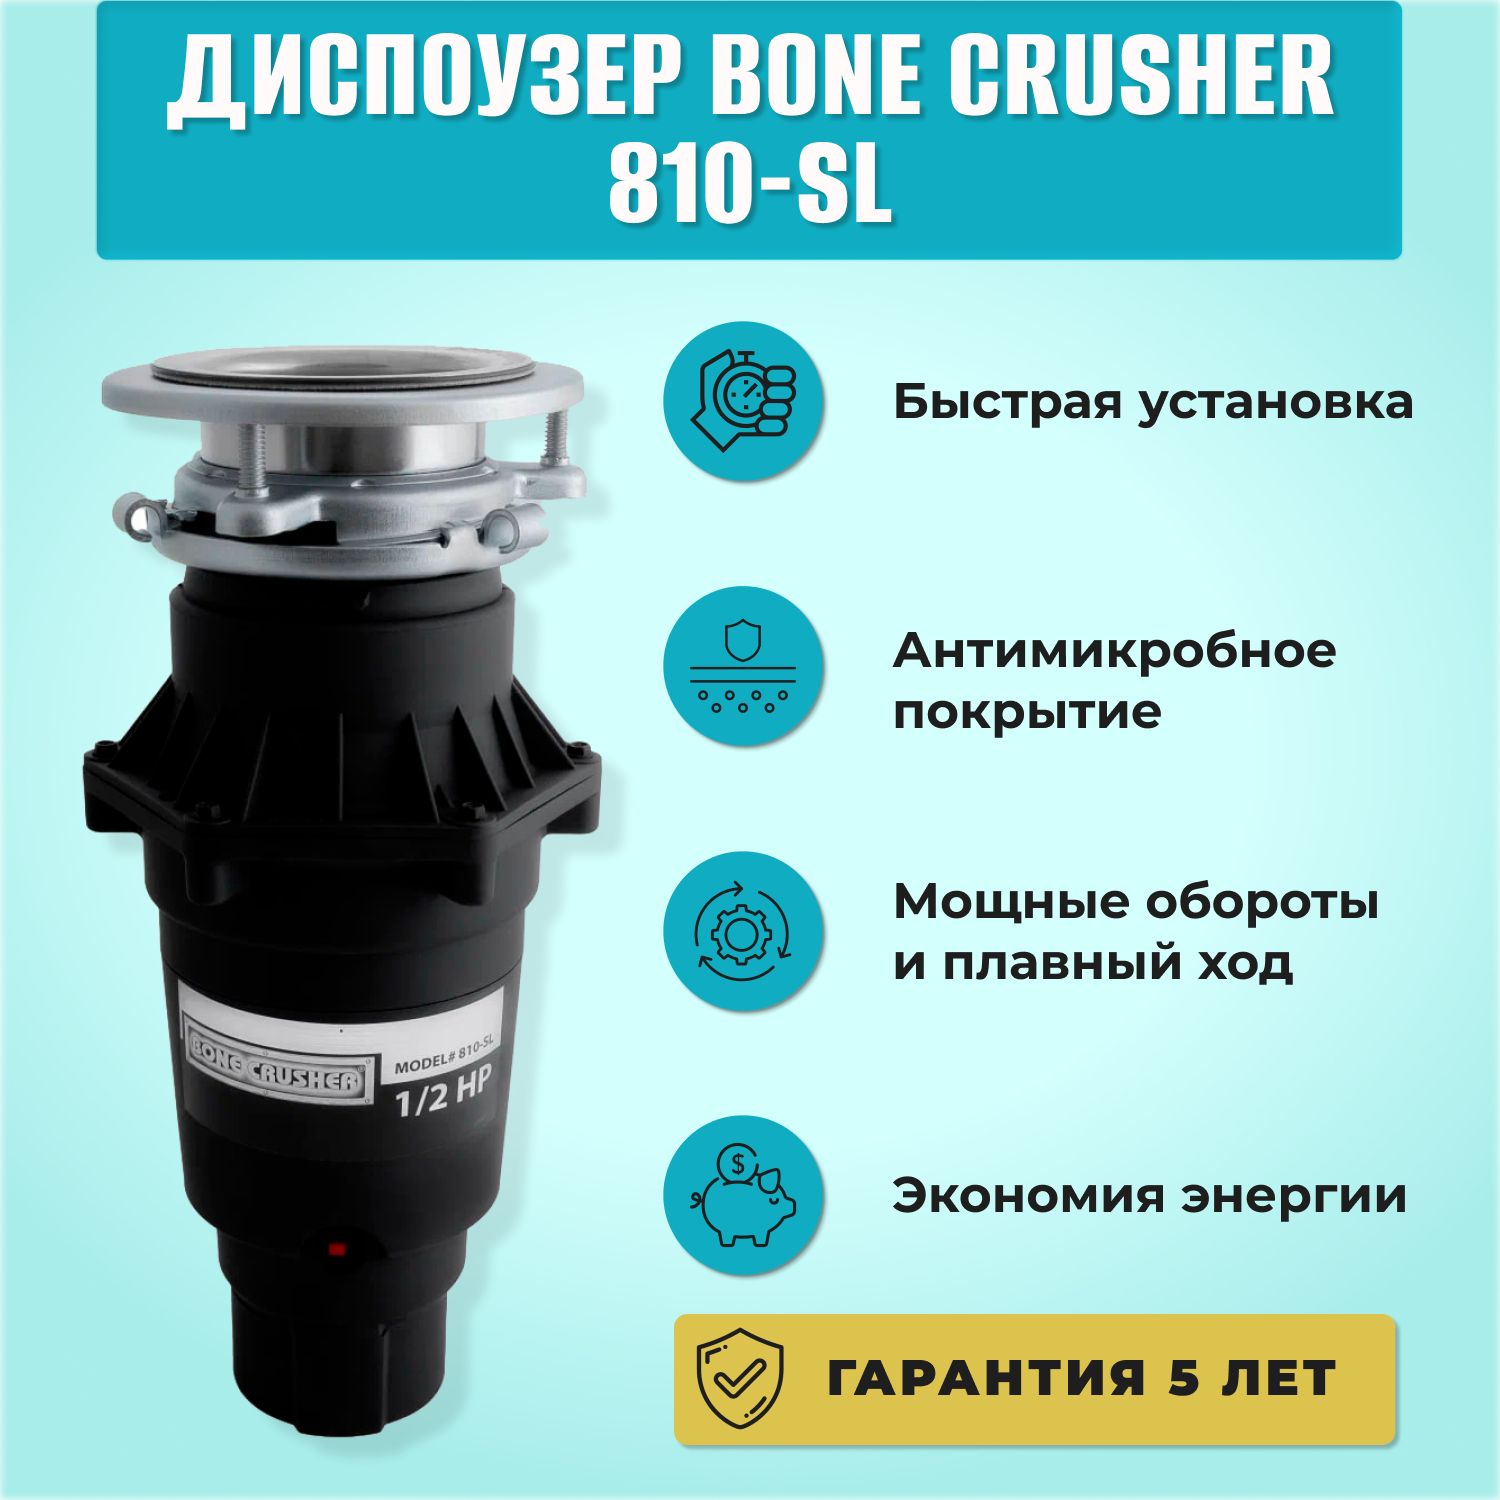 Bone crusher 810 slim line. Bone crusher BC 810. Bone crusher BC 810 Slim line. Bone crusher BC-810-SL.